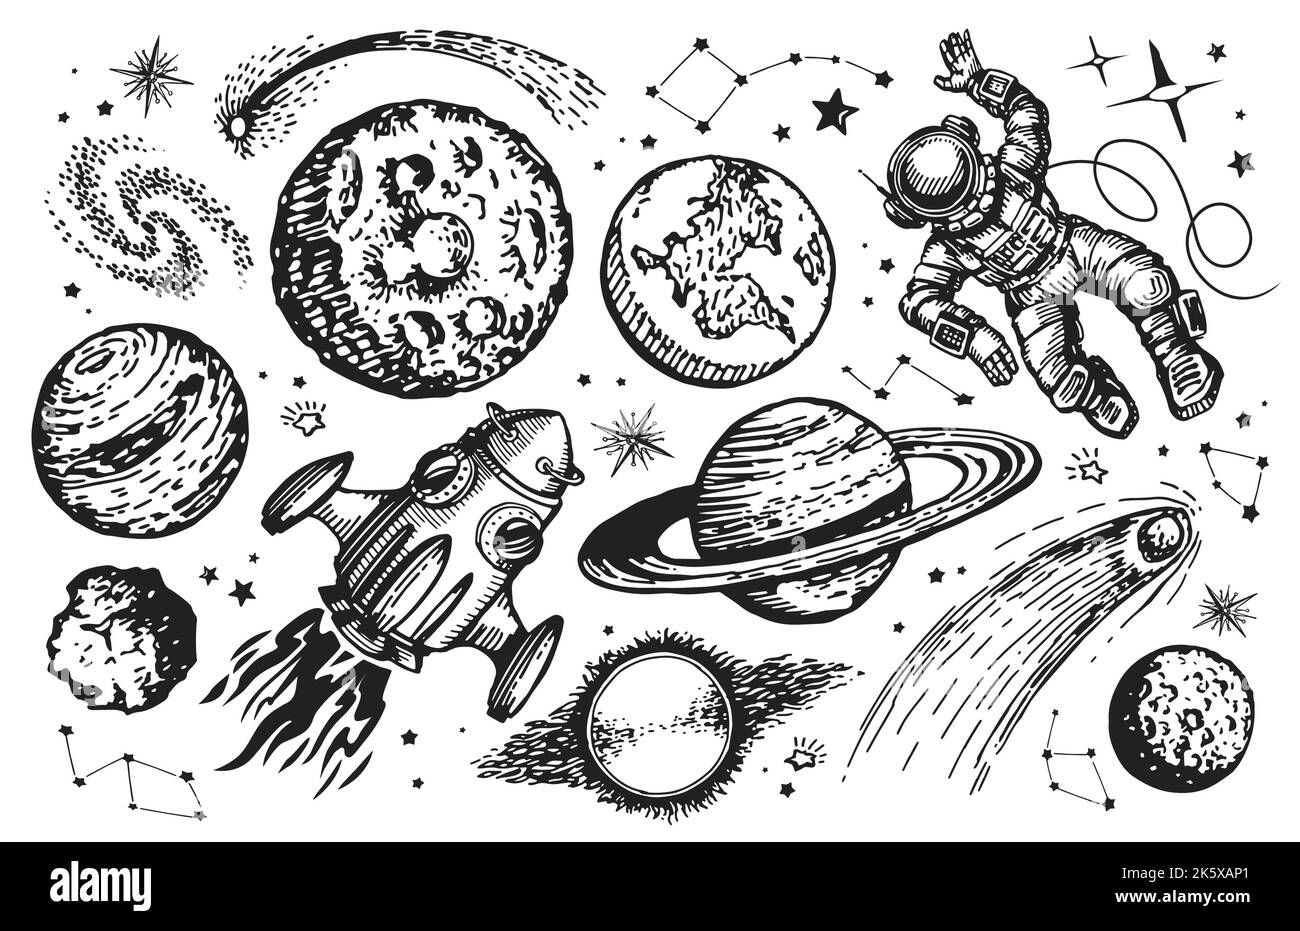 Concept de voyage dans l'espace. Ensemble de dessin Galaxy. Vaisseau spatial, astronaute, planètes et étoiles esquvent une illustration vectorielle vintage Illustration de Vecteur